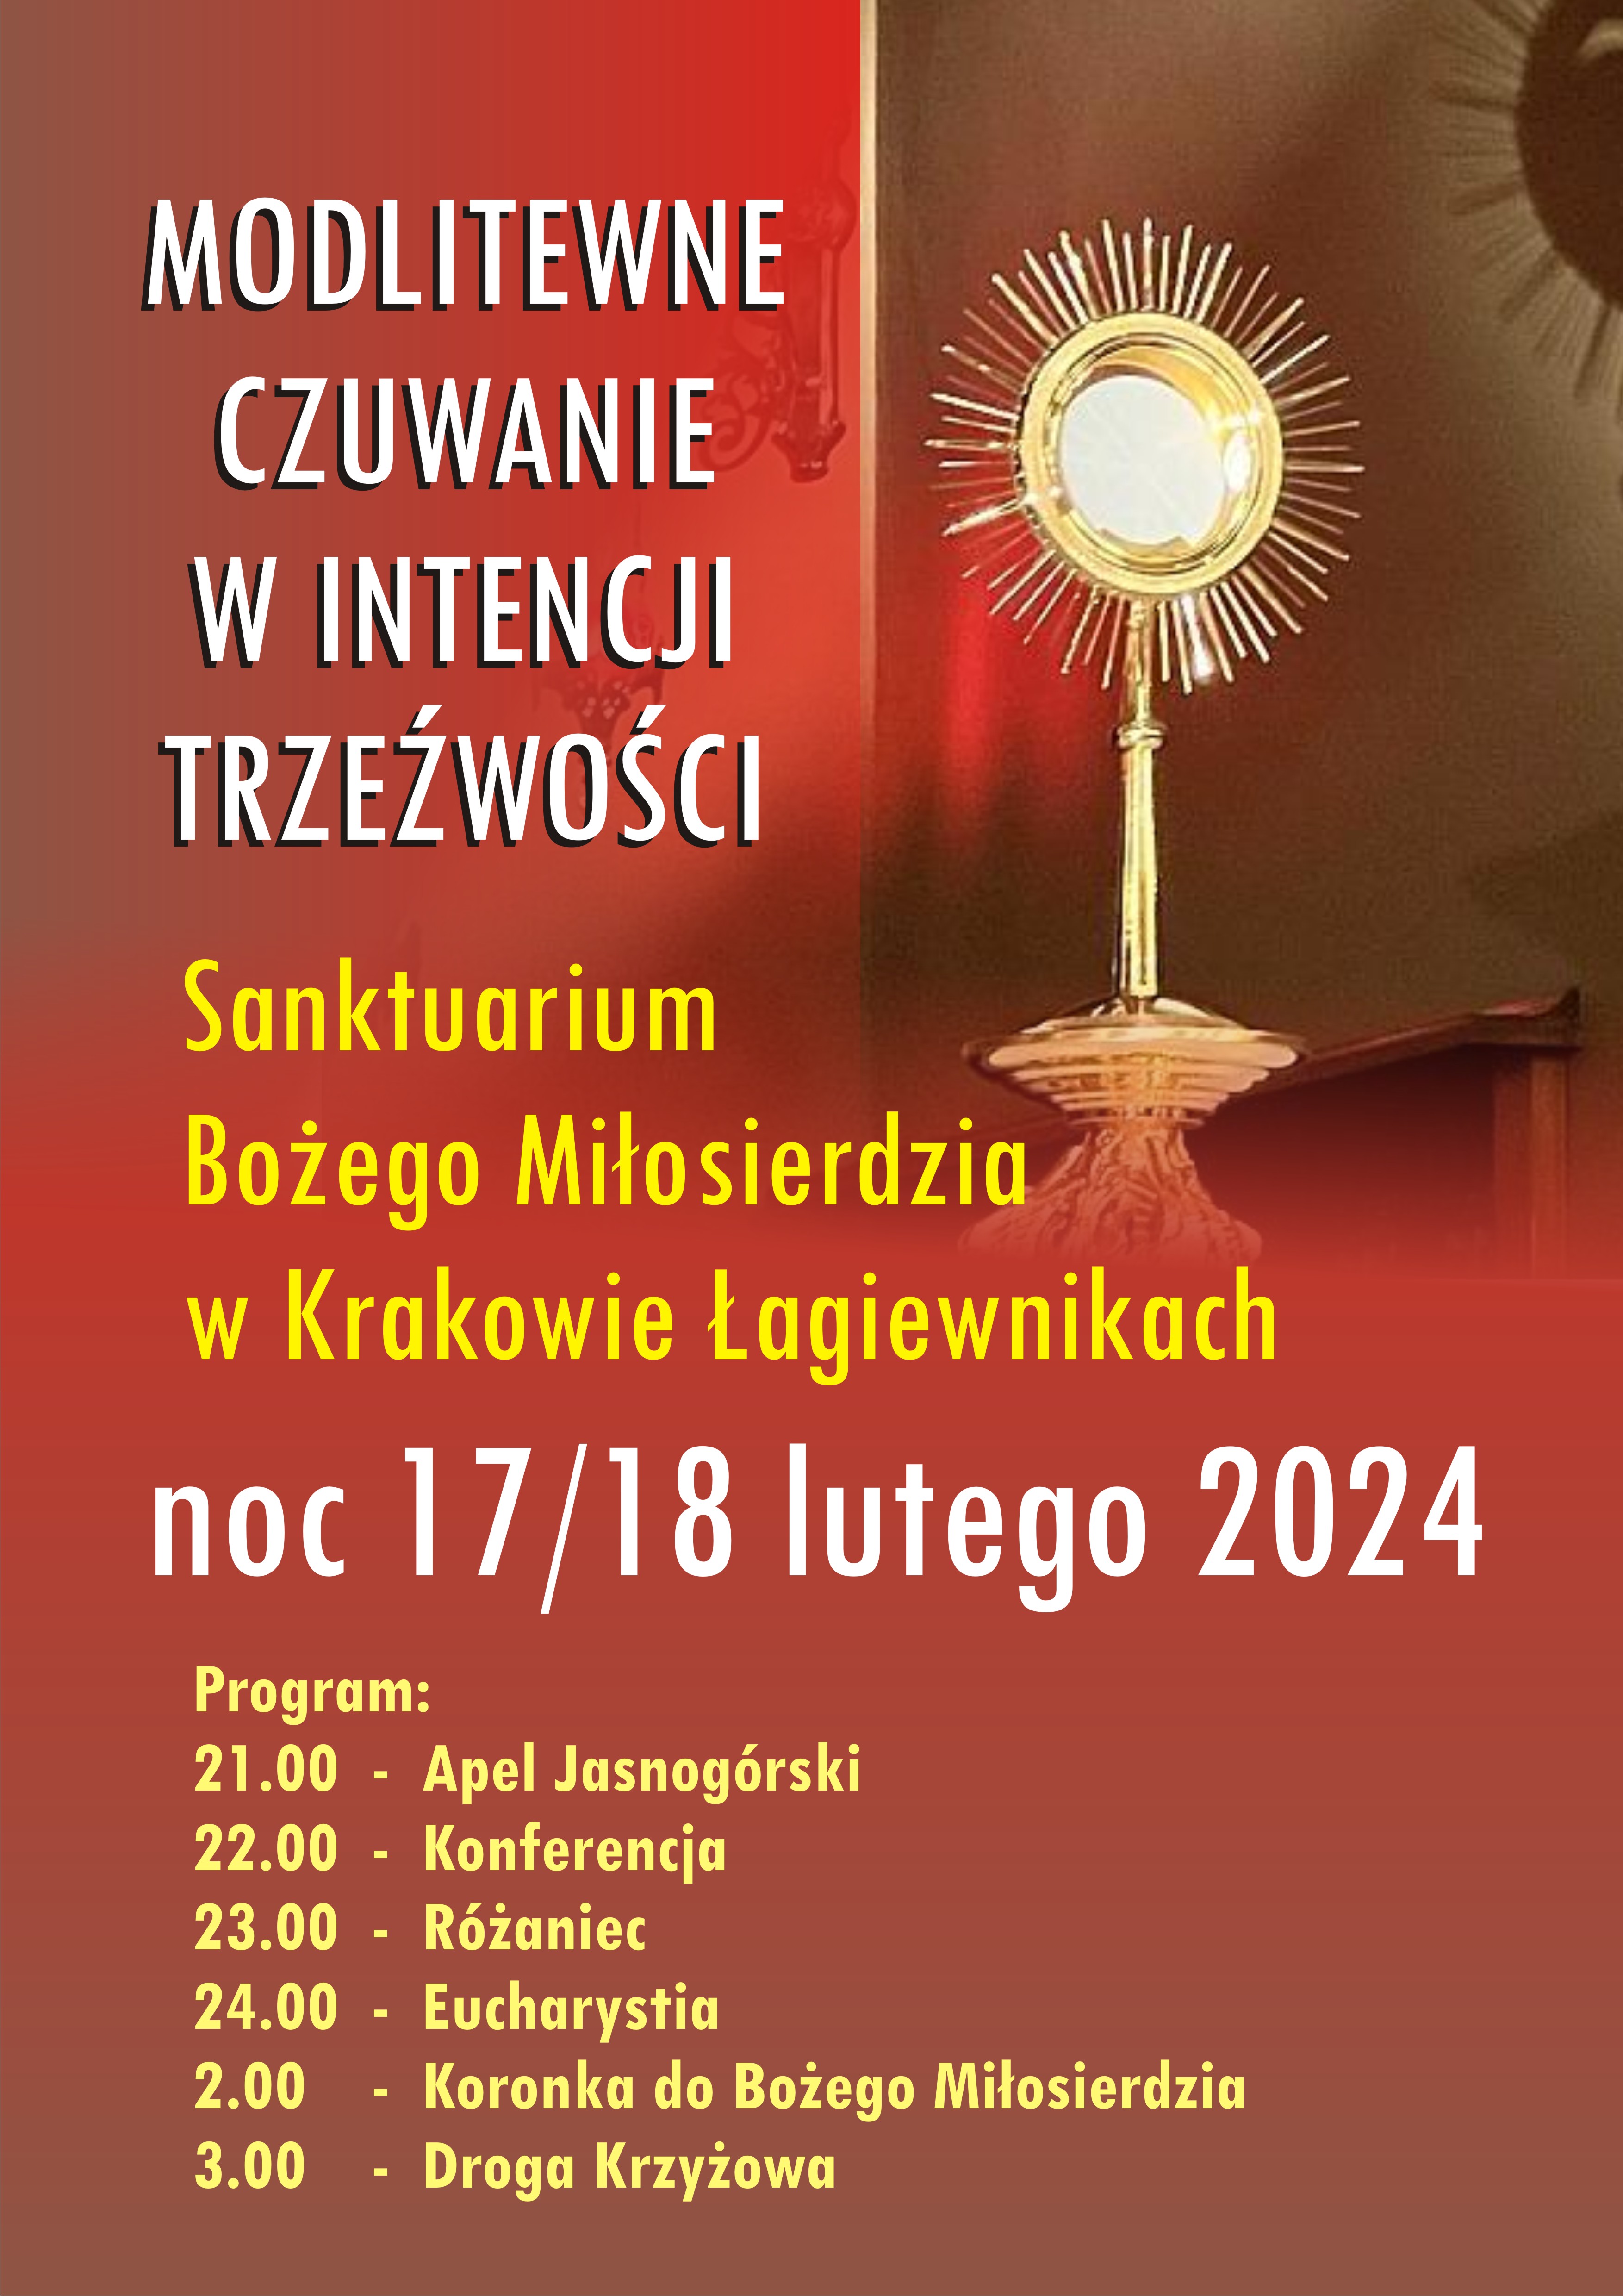 Modlitewne czuwanie w intencji trzeźwości Sanktuarium Bożego Miłosierdzia w Krakowie-Łagiewnikach